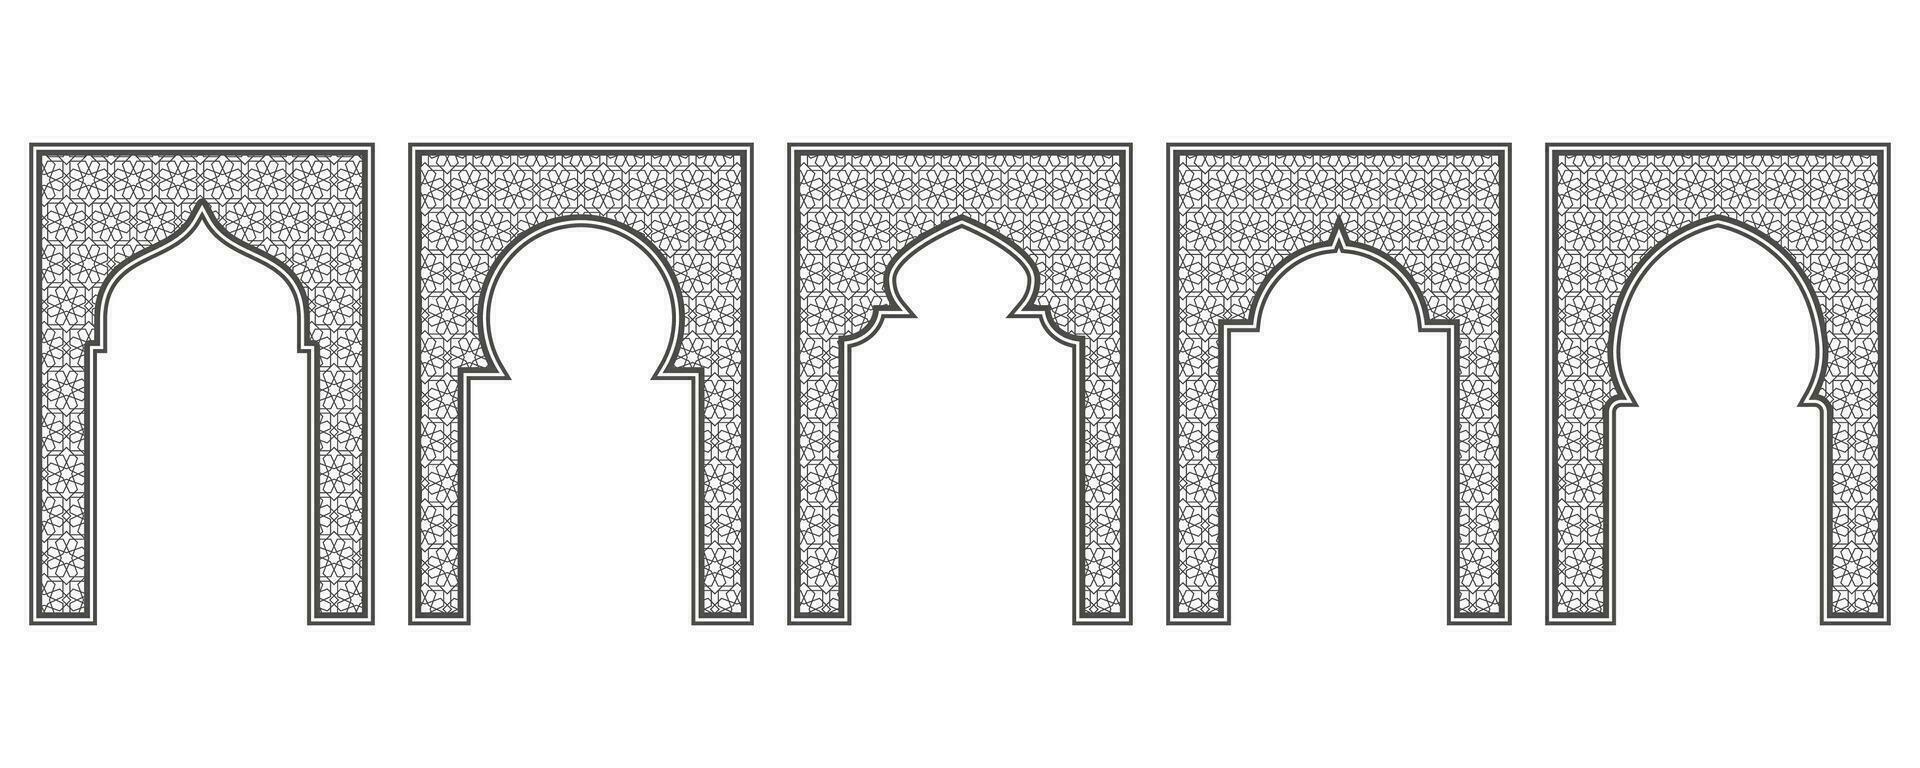 Islamitisch kader met boog en ornament. Ramadan poort Aan meetkundig achtergrond voor bruiloft uitnodiging ontwerp. vector oosters decoraties set.